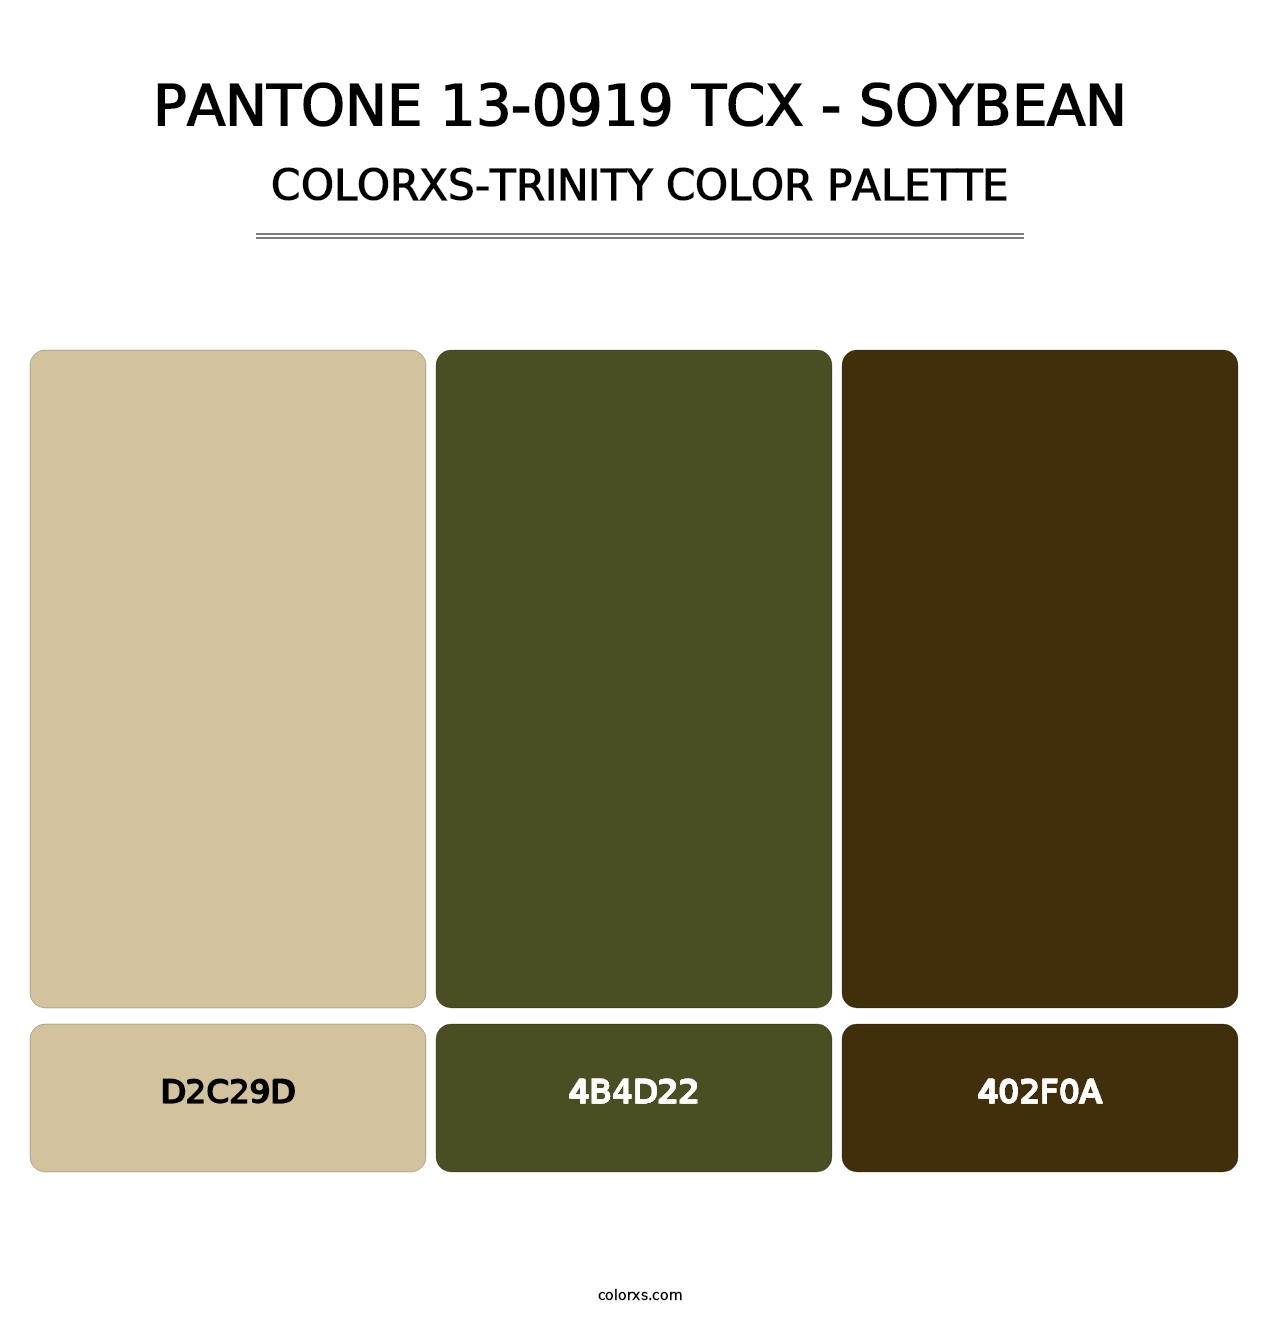 PANTONE 13-0919 TCX - Soybean - Colorxs Trinity Palette